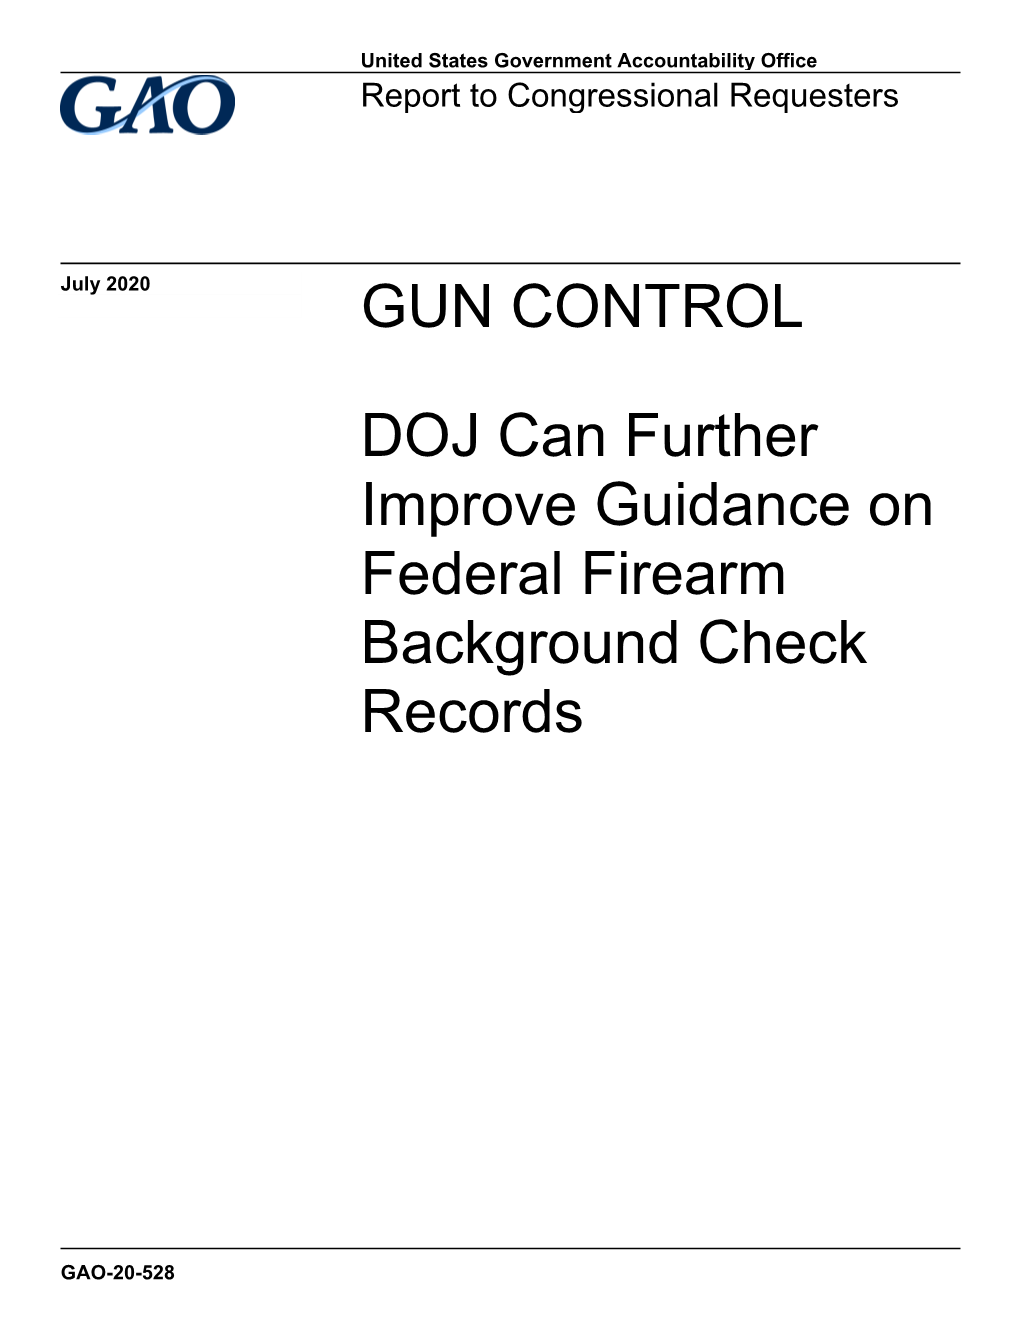 GAO-20-528, GUN CONTROL: DOJ Can Further Improve Guidance On